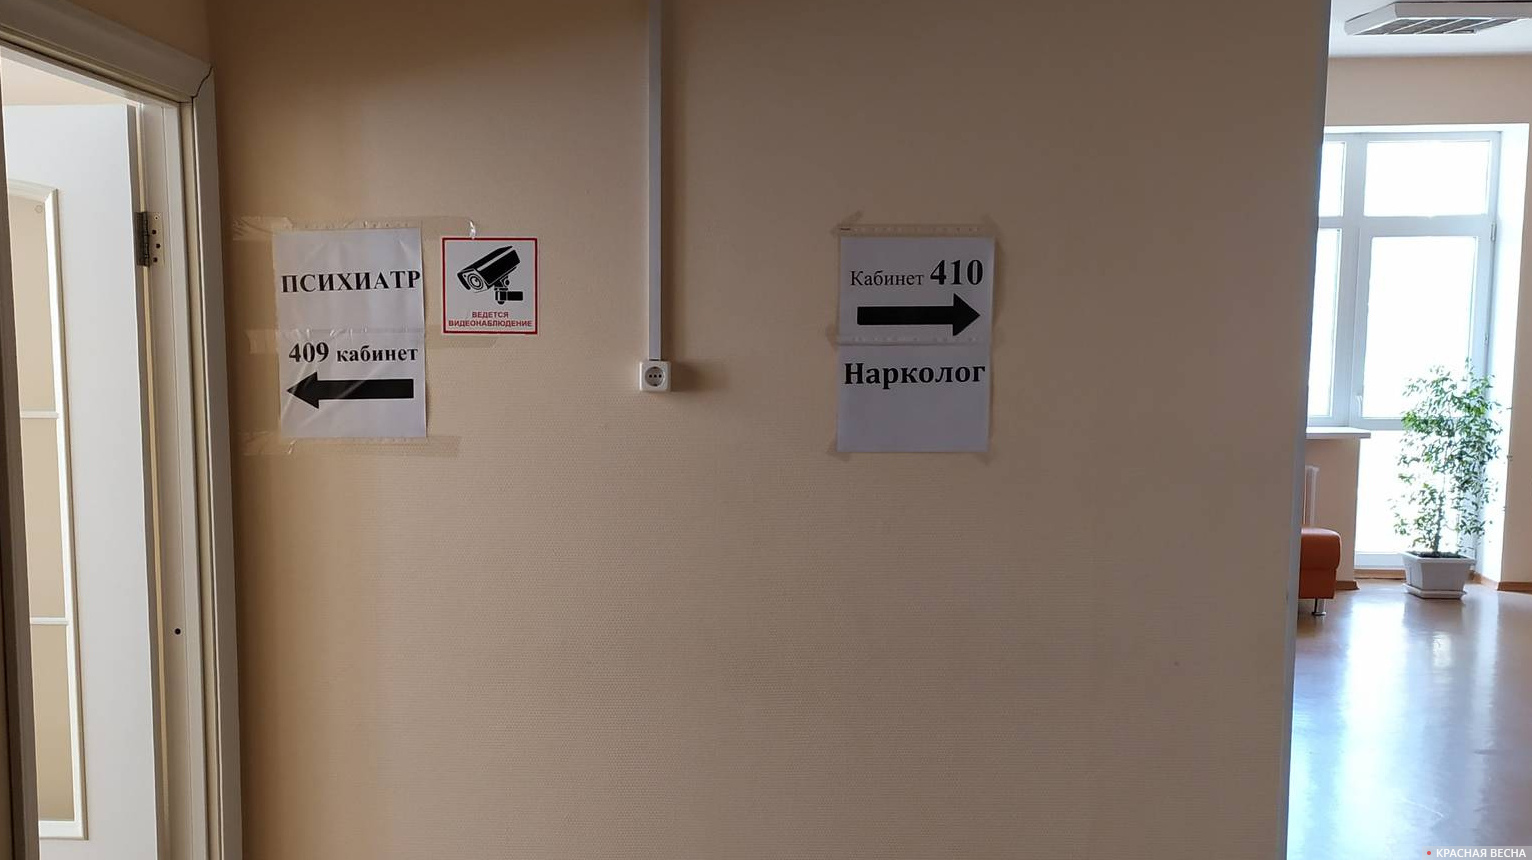 В коридоре наркологического диспансера